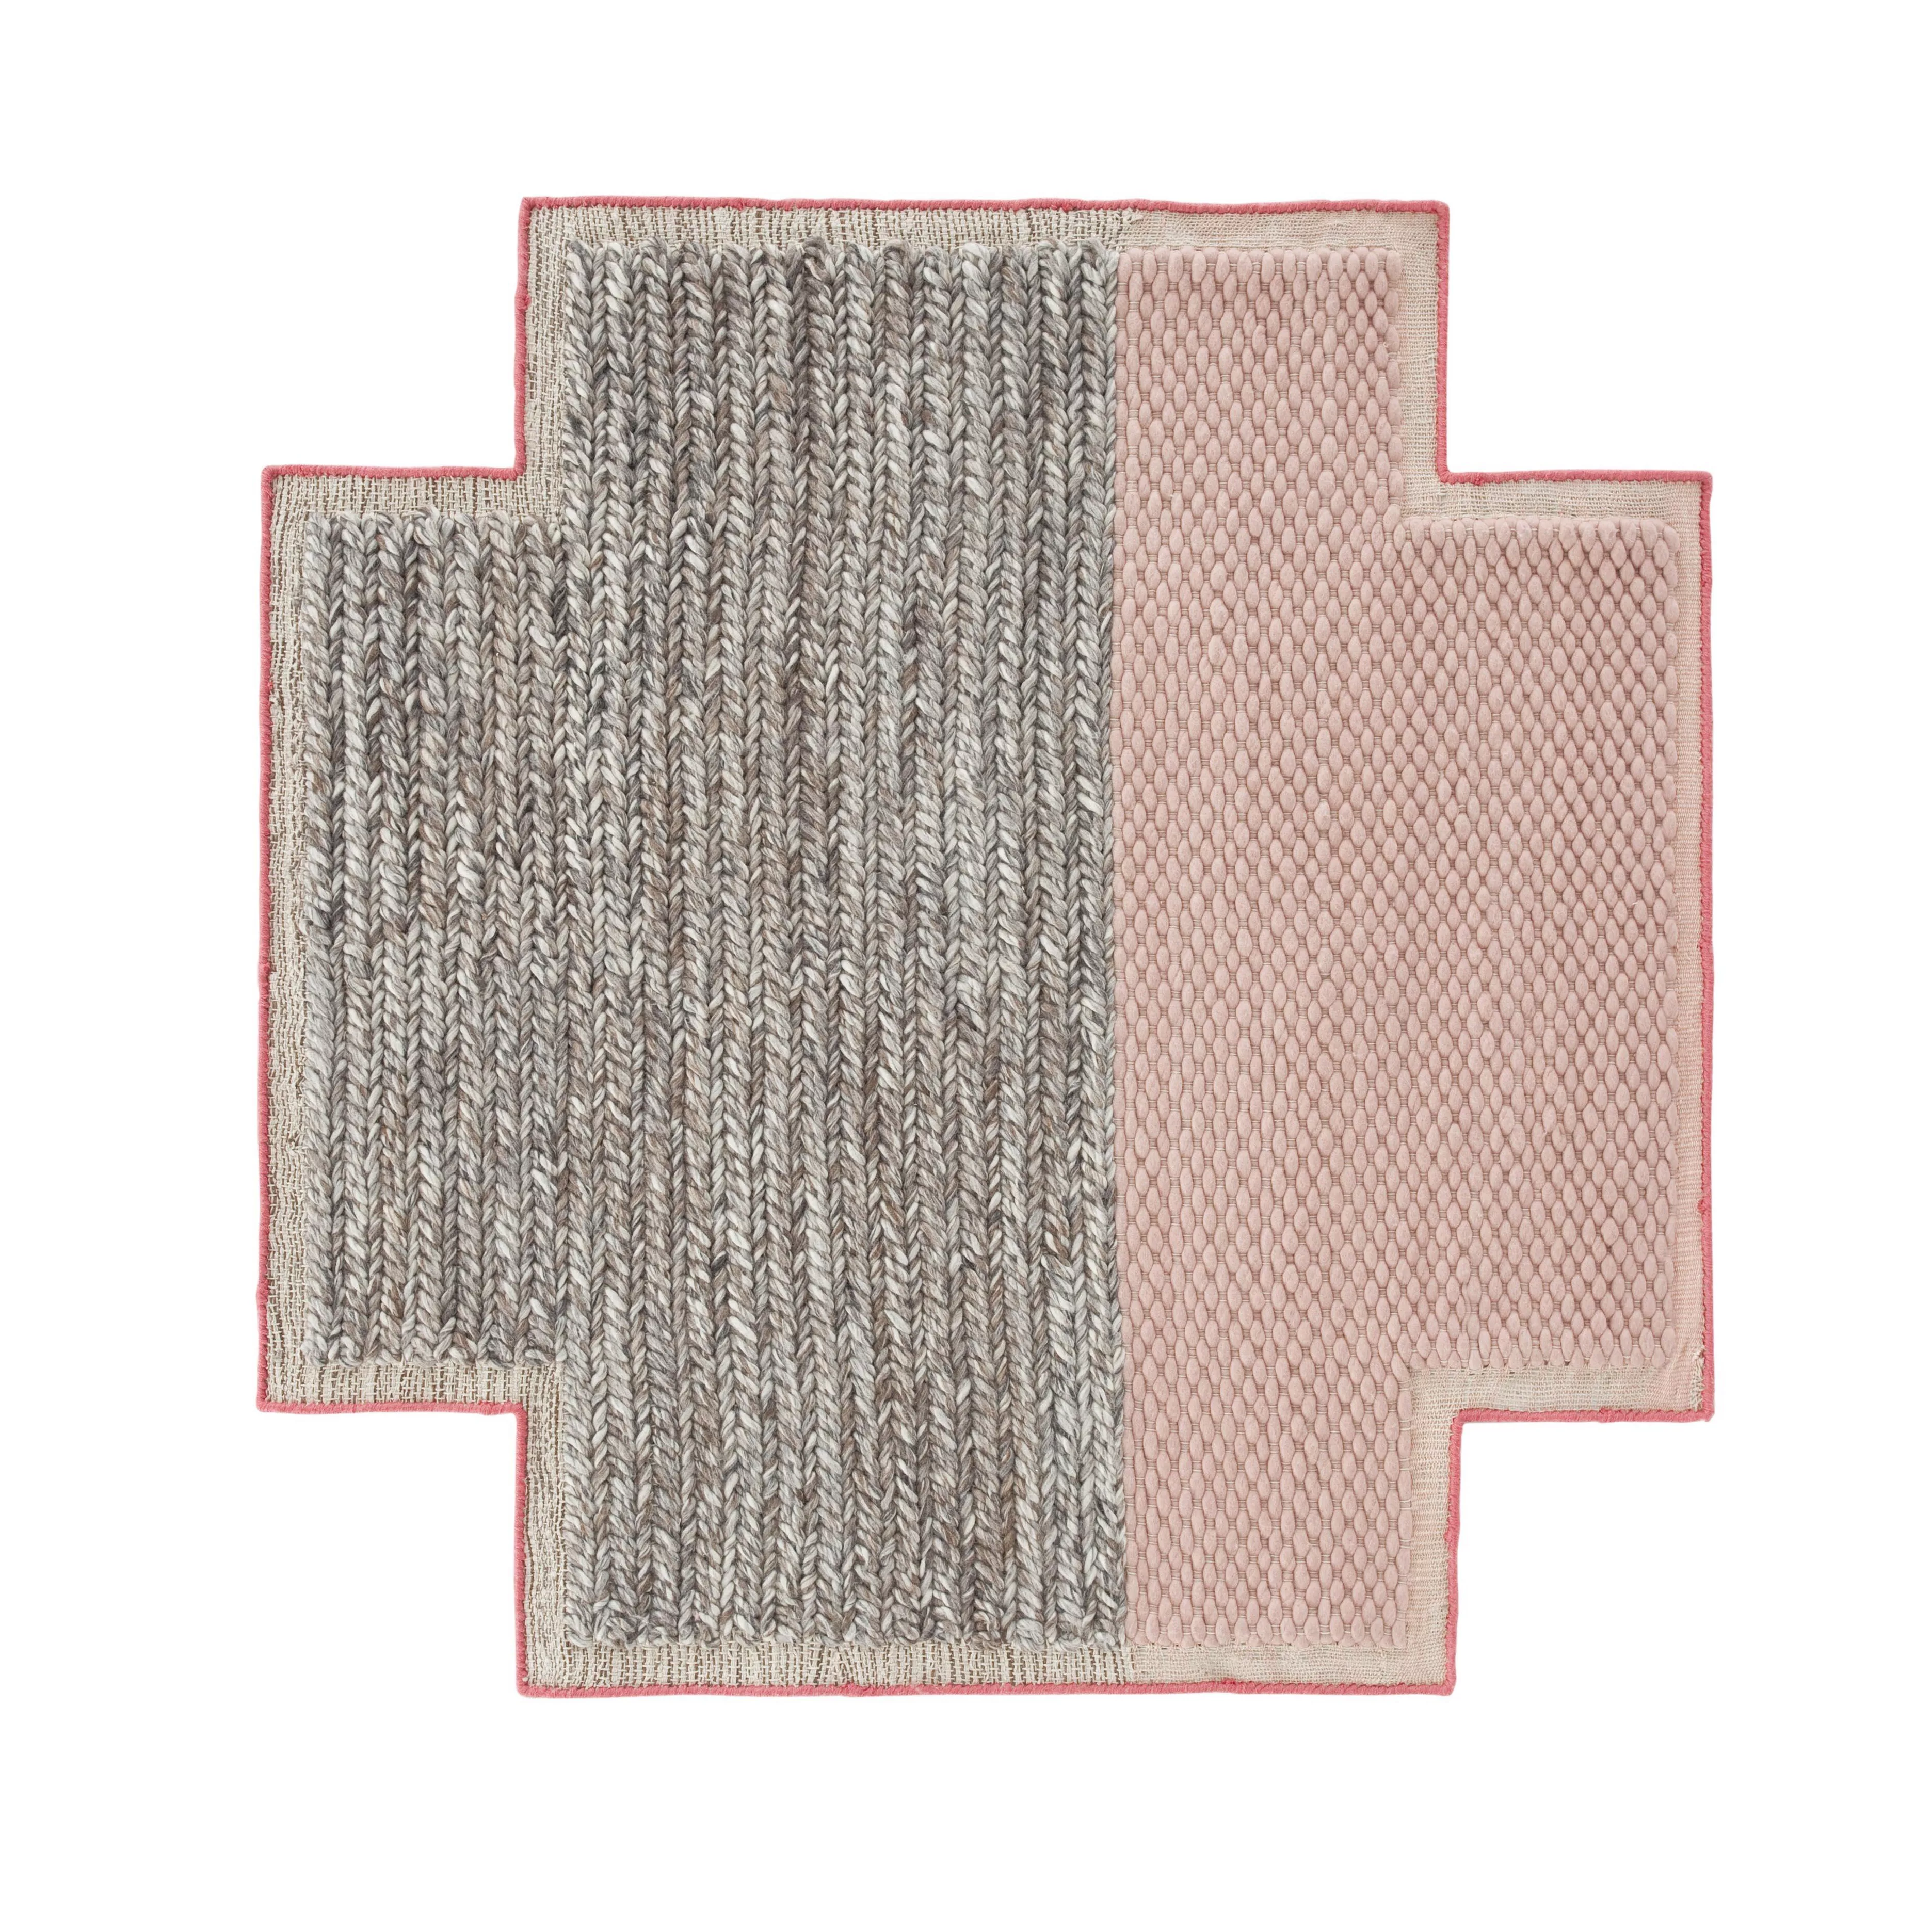 GAN - Mangas Space Square Teppich - pink/grau geflochten/100% neue Wolle/vo günstig online kaufen